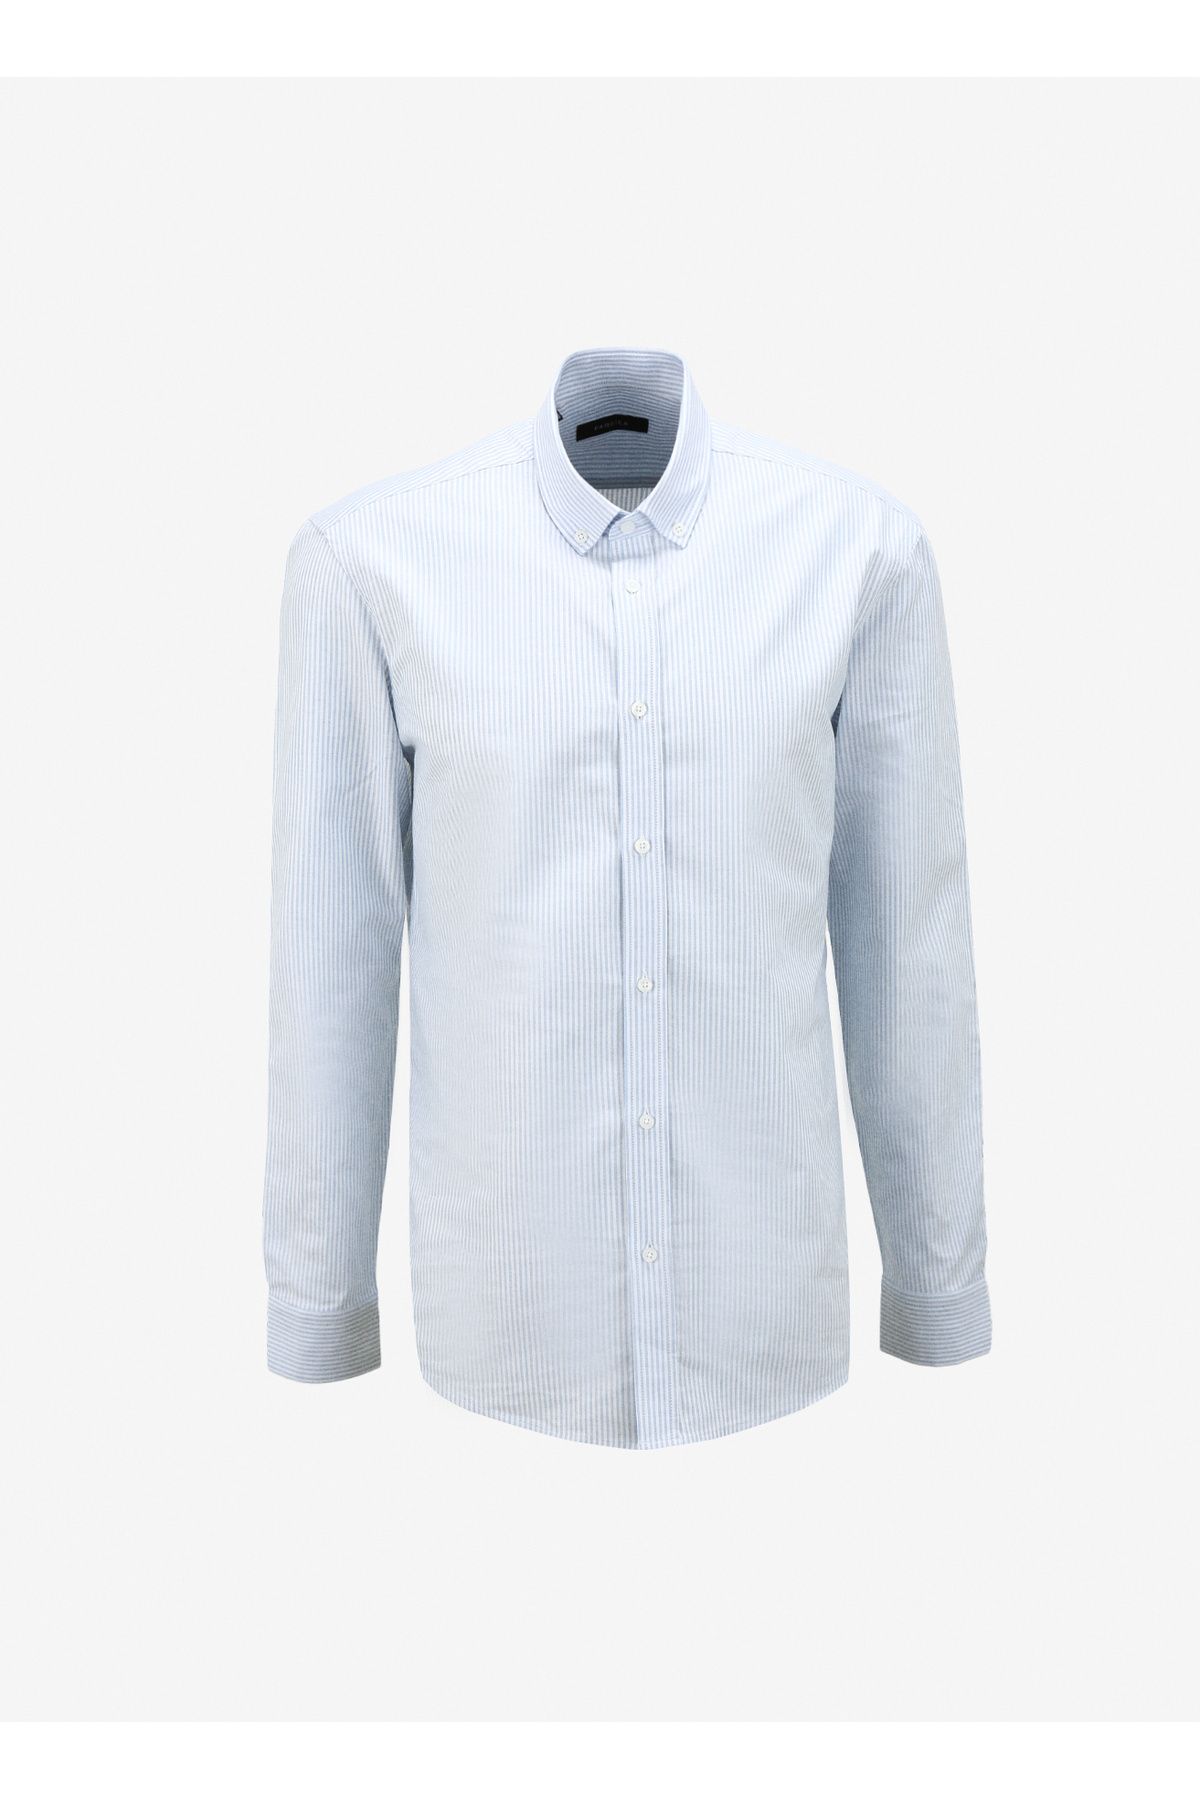 Fabrika Basic Düğmeli Yaka Çizgili Beyaz - Mavi Erkek Gömlek F4SM-GML 1002